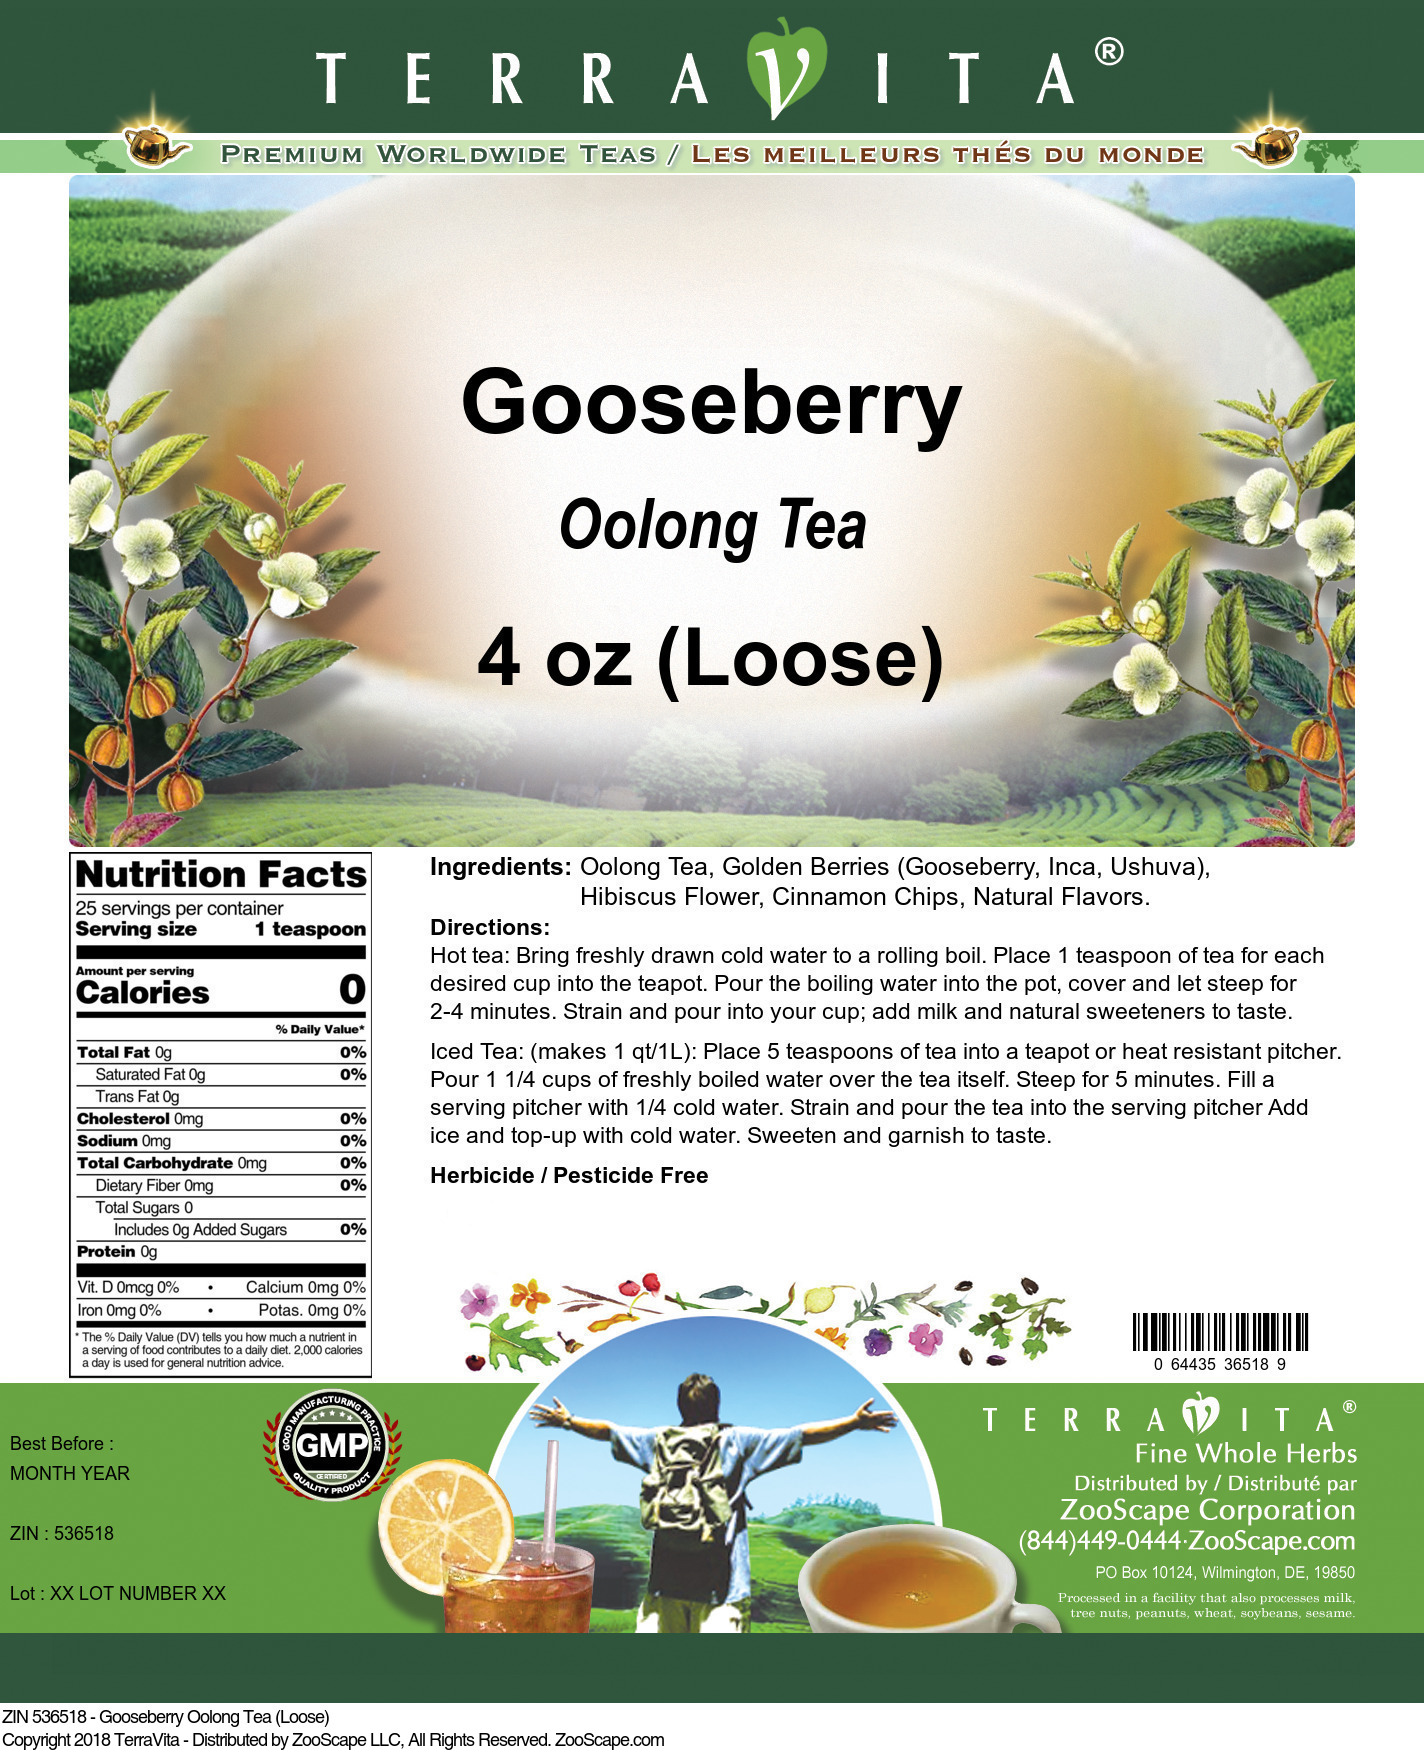 Gooseberry Oolong Tea (Loose) - Label